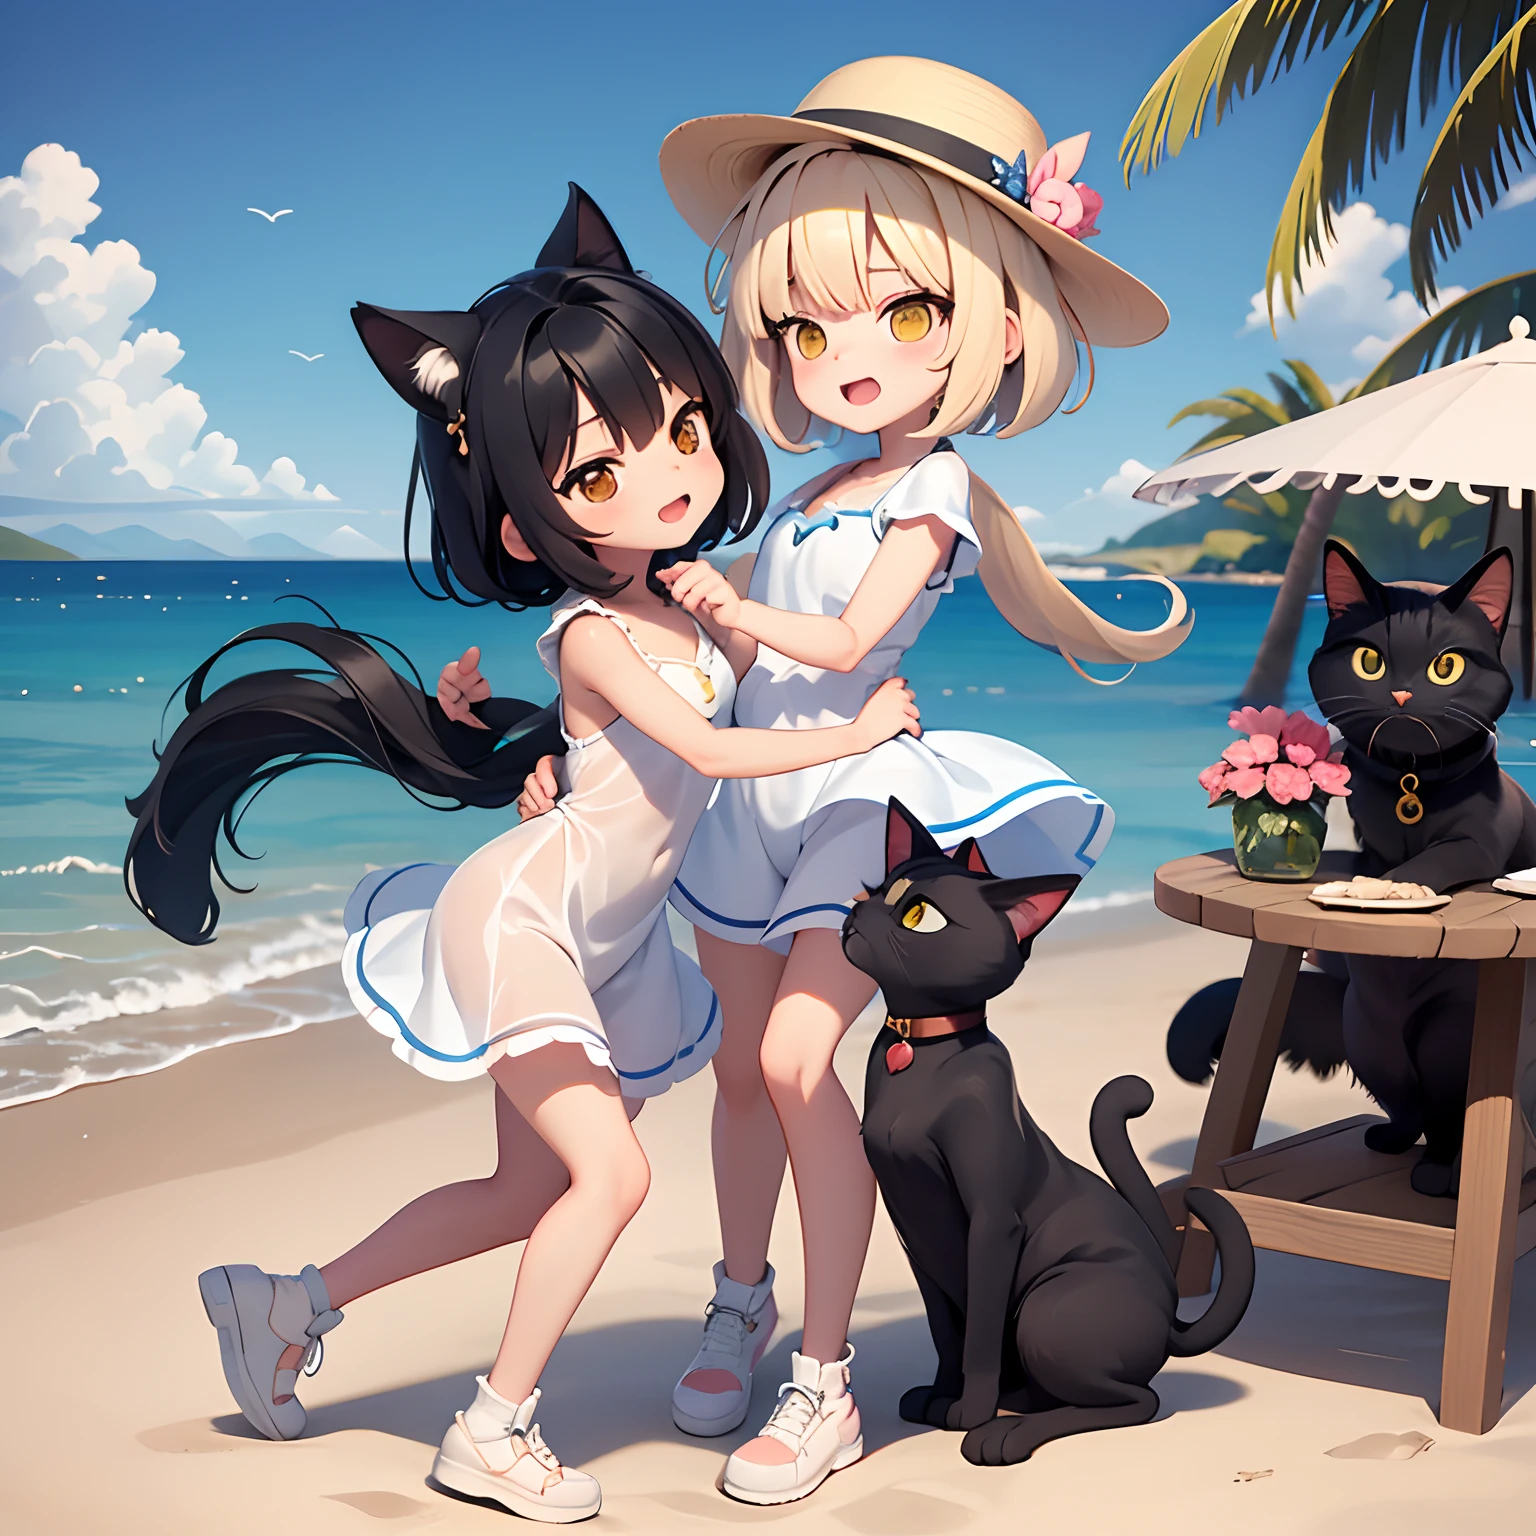 2девушка , 1 ситцевый кот, 1 черный кот, девушка танцует вместе в белой шляпе на пляже, остров на заднем плане, на песке так много ракушек